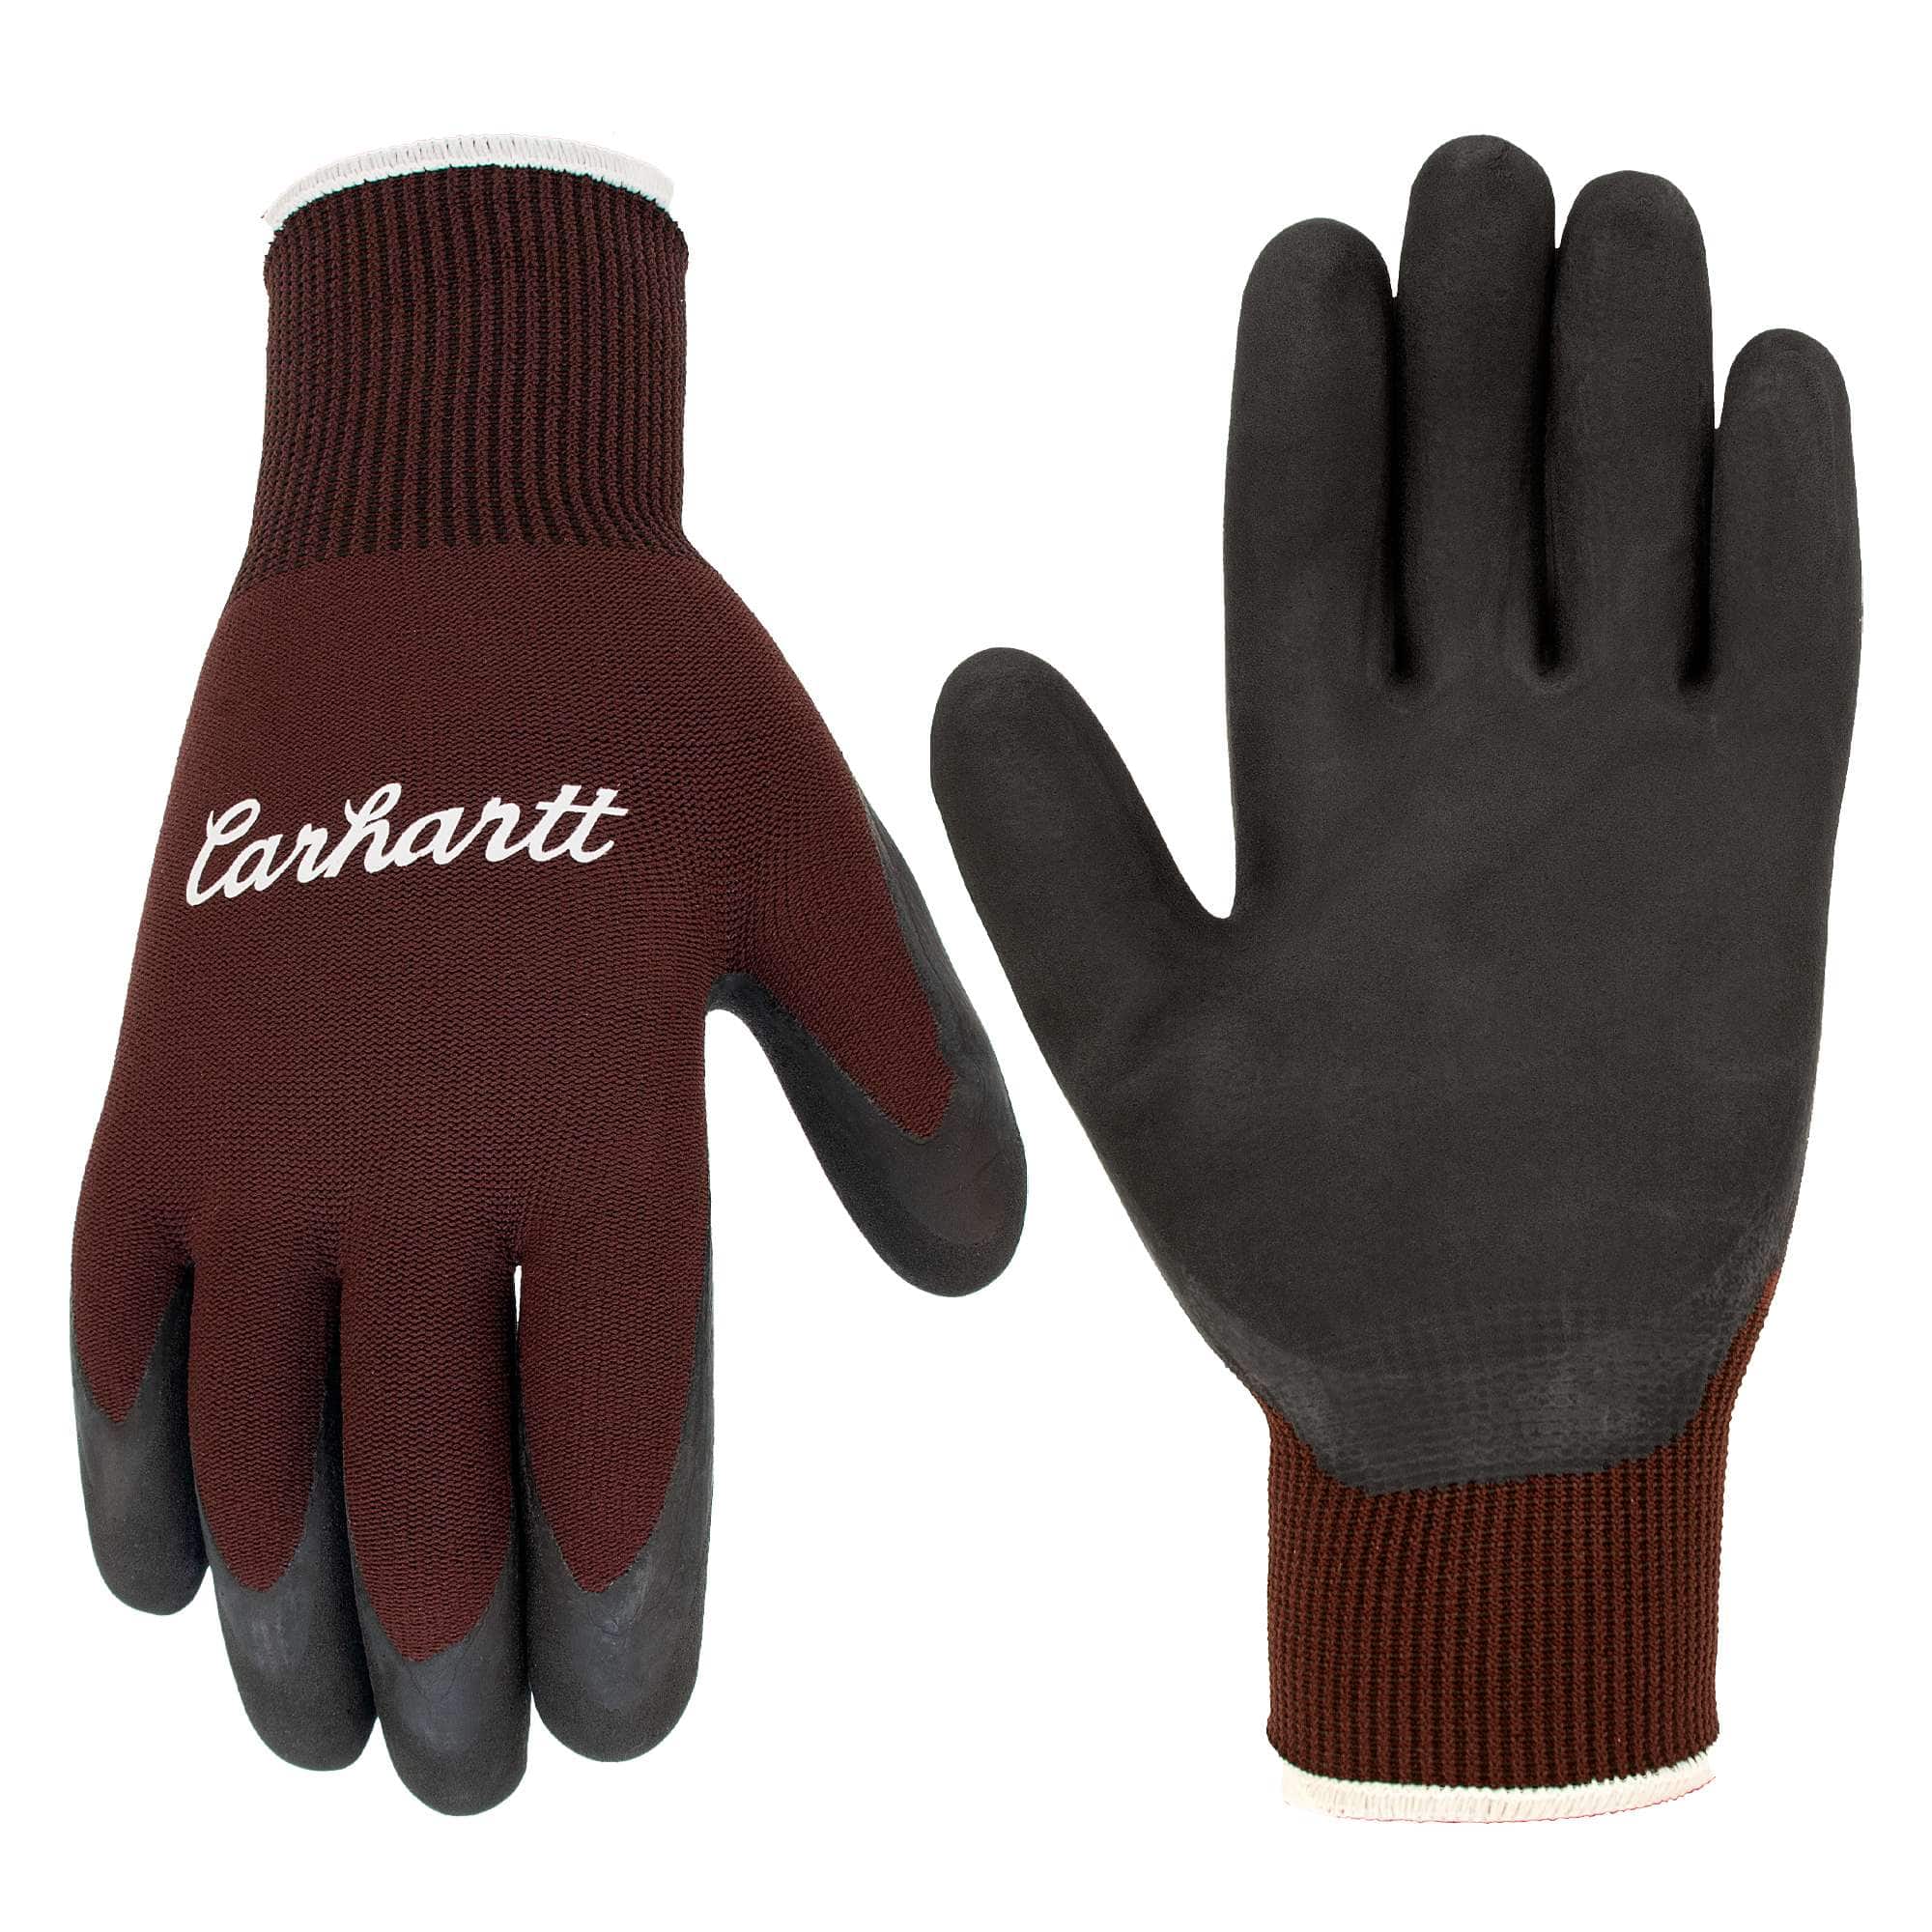 Hybrid C-Grip® Glove, Cyber Monday Deals on Accessories